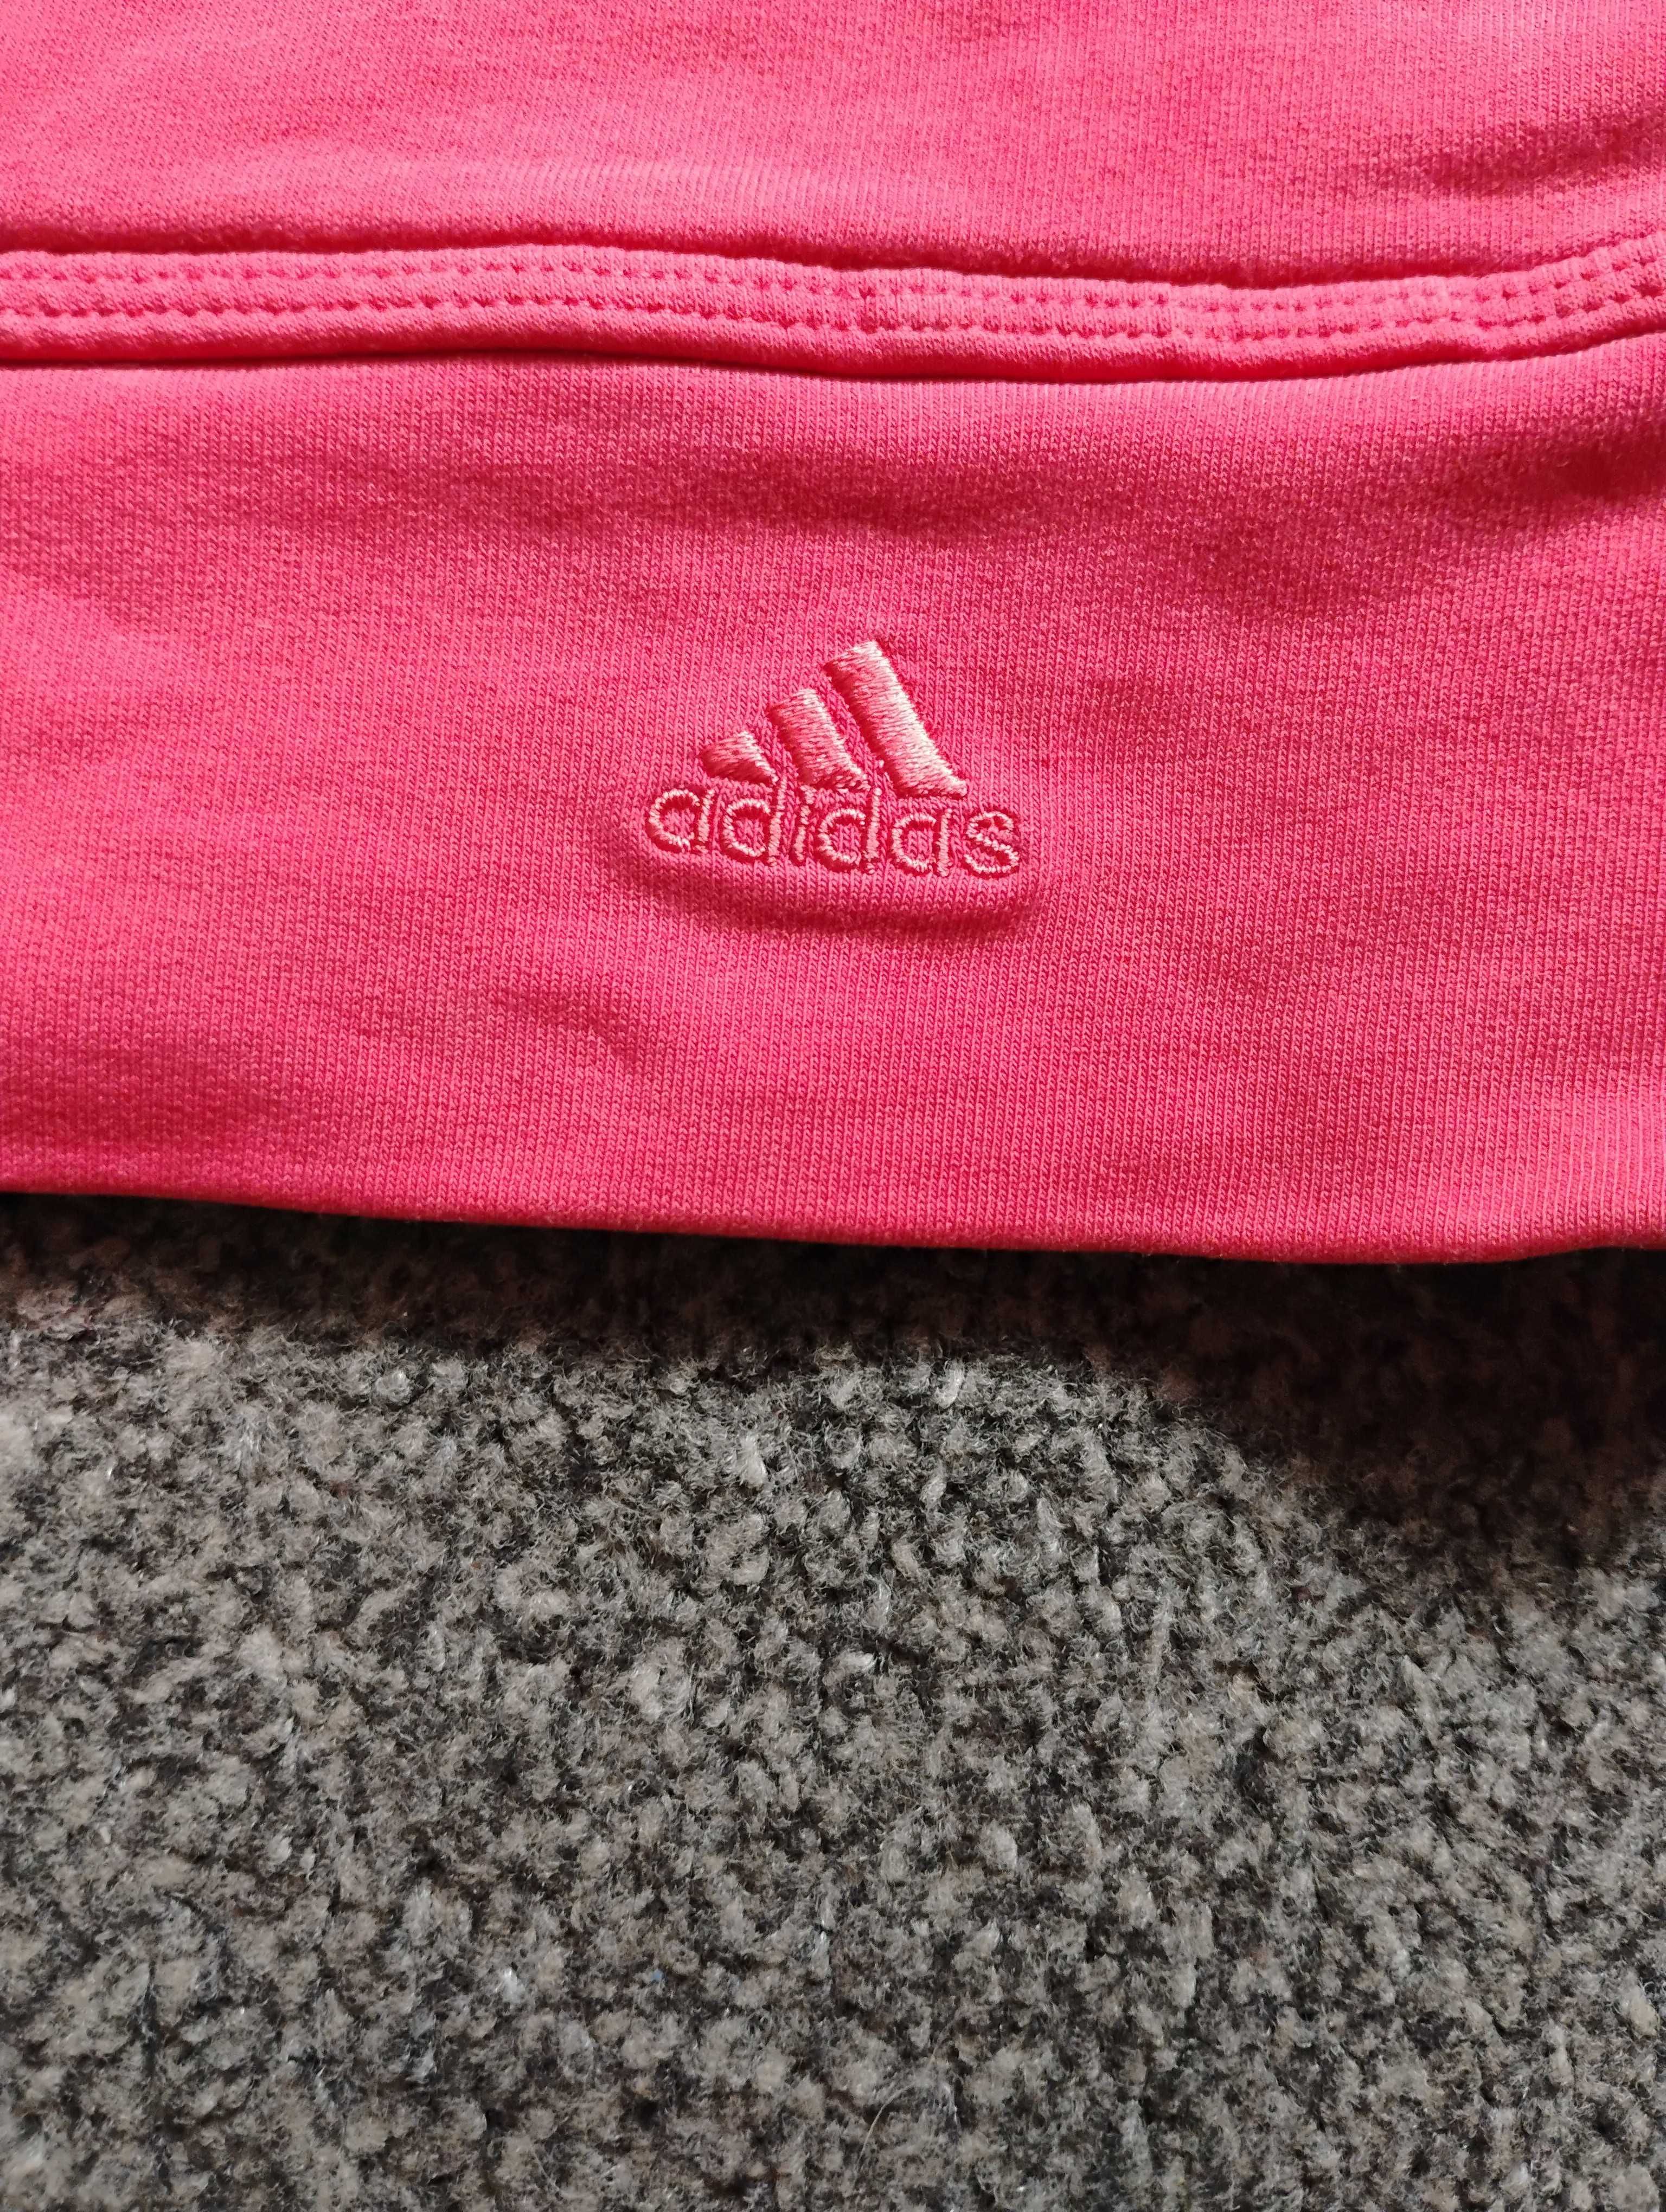 Adidas bluza damska, roz M